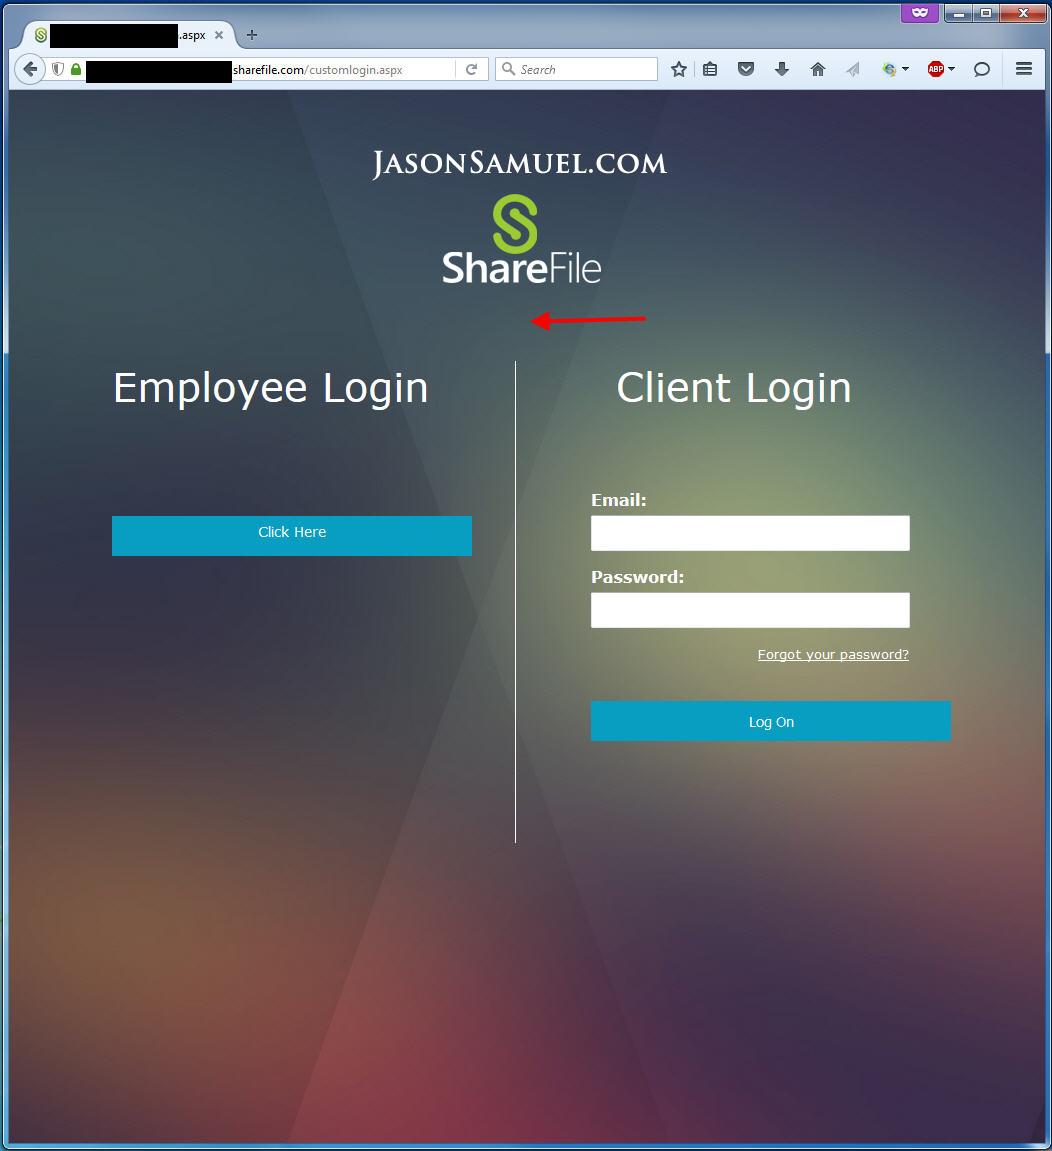 sharefile-split-login-custom-logo-white-space-gone